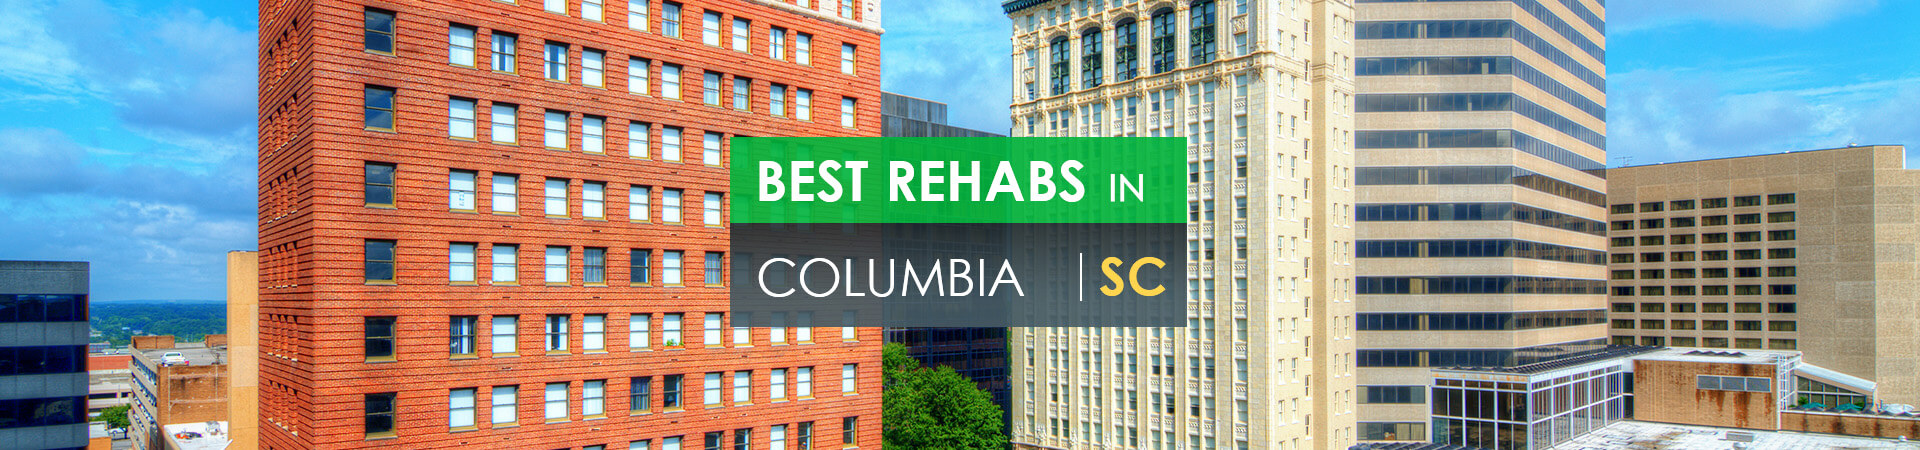 Best rehabs in Columbia, SC